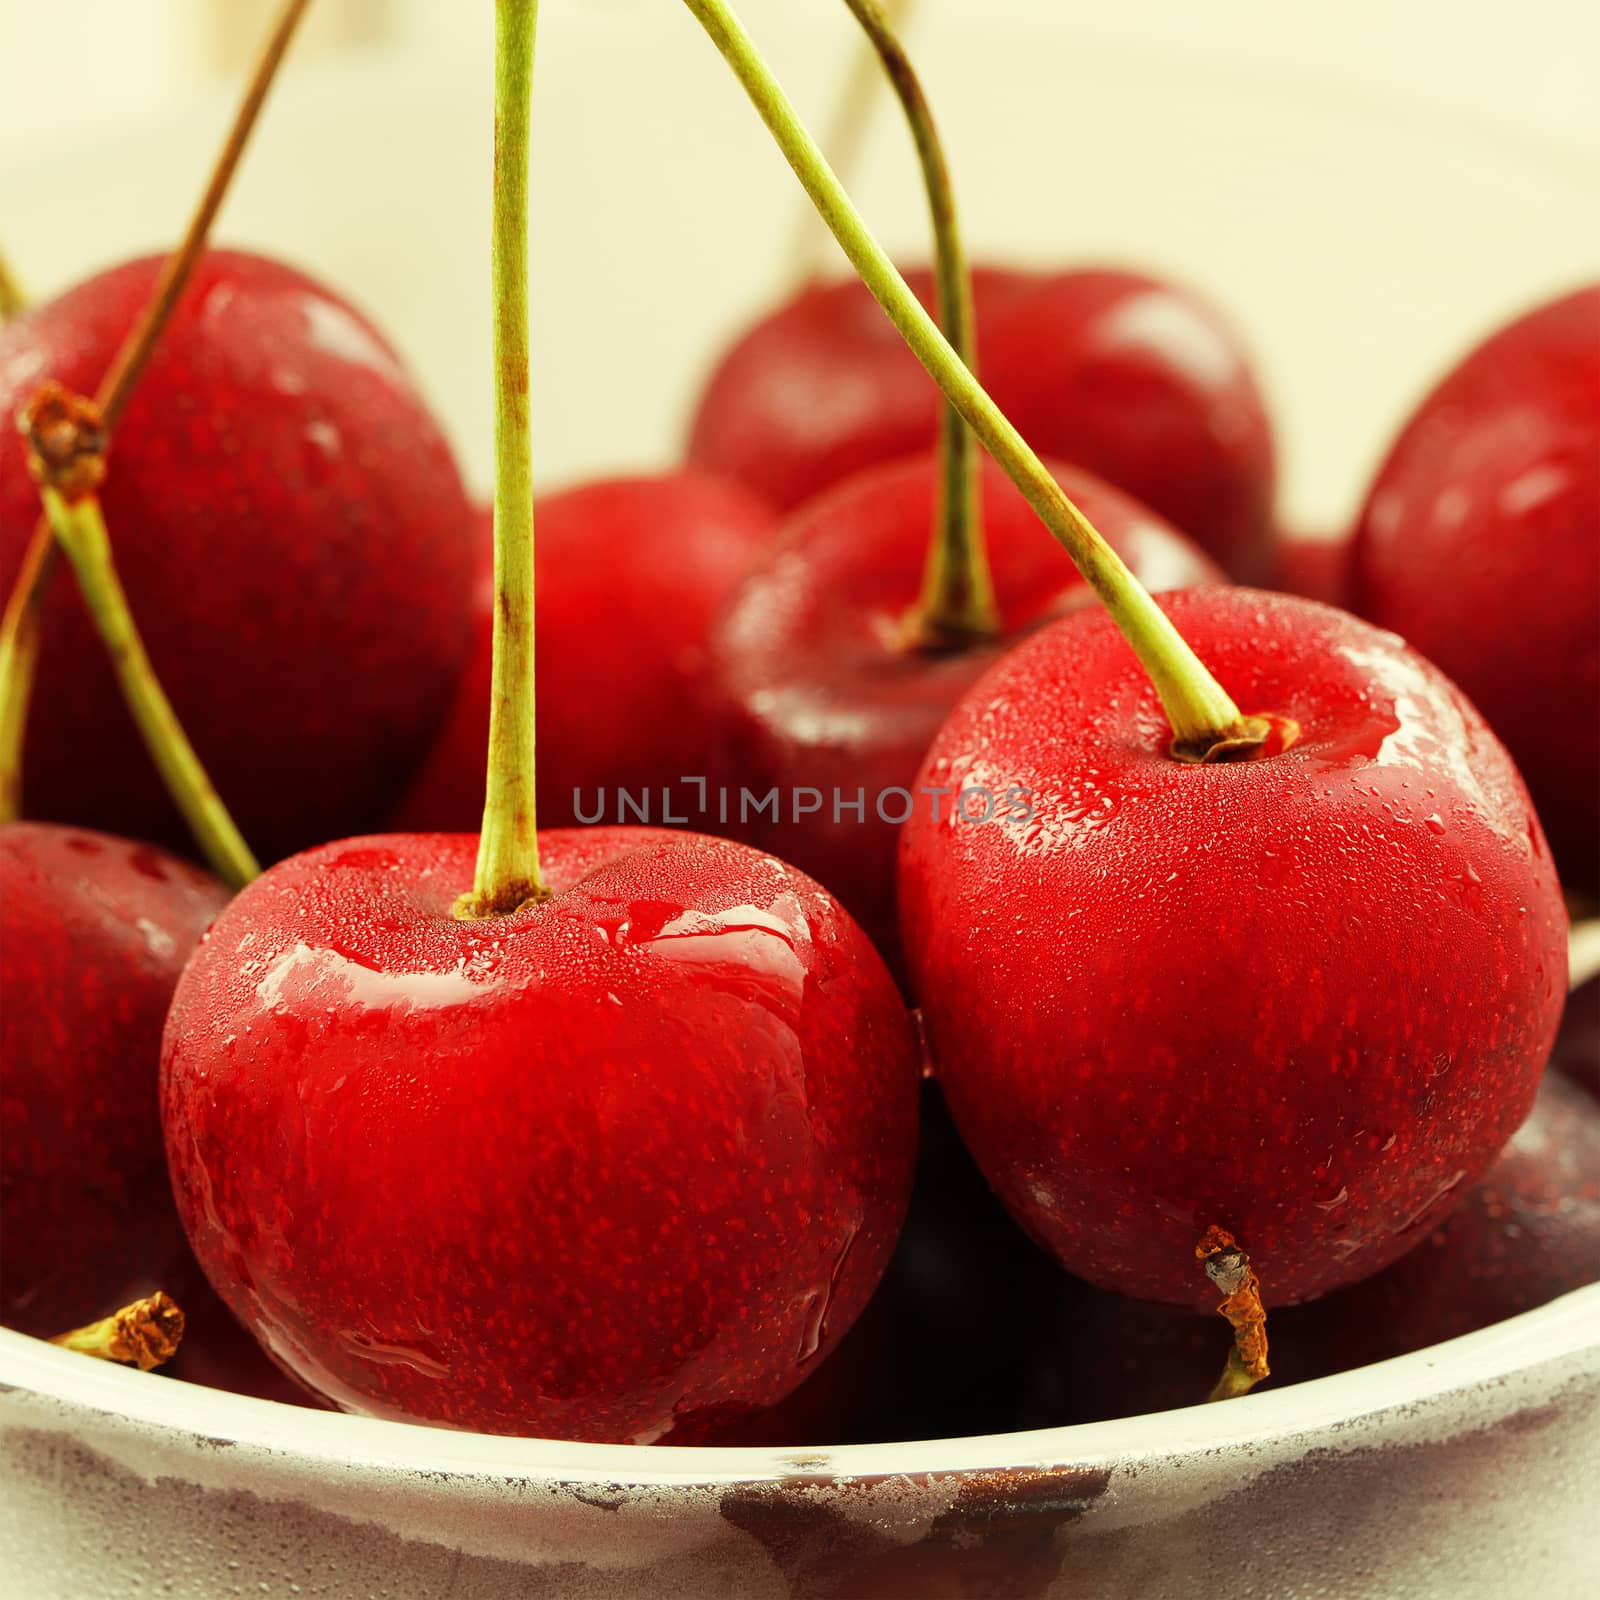 Beautiful red cherry  close up macro photo